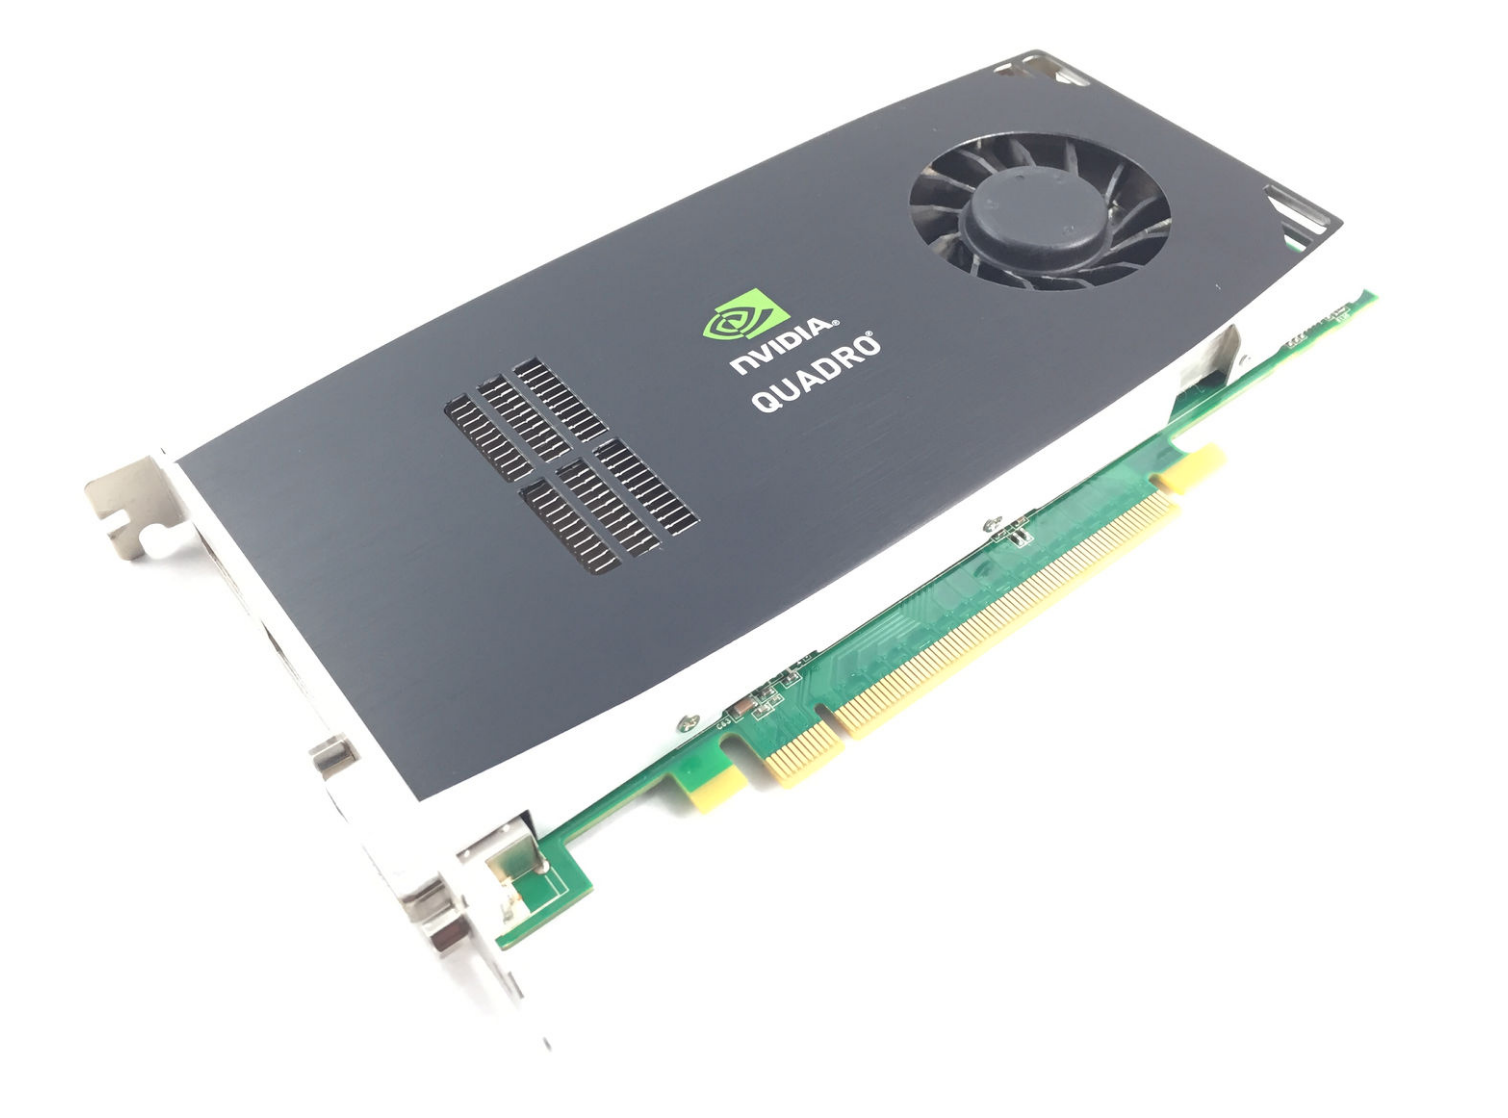 Tarjeta de Video Nvidia QUADRO FX1800 768MB GDDR3 PCI-E Video Card 2 X Display Port 1 X DVI HP 519296-001 508284-001